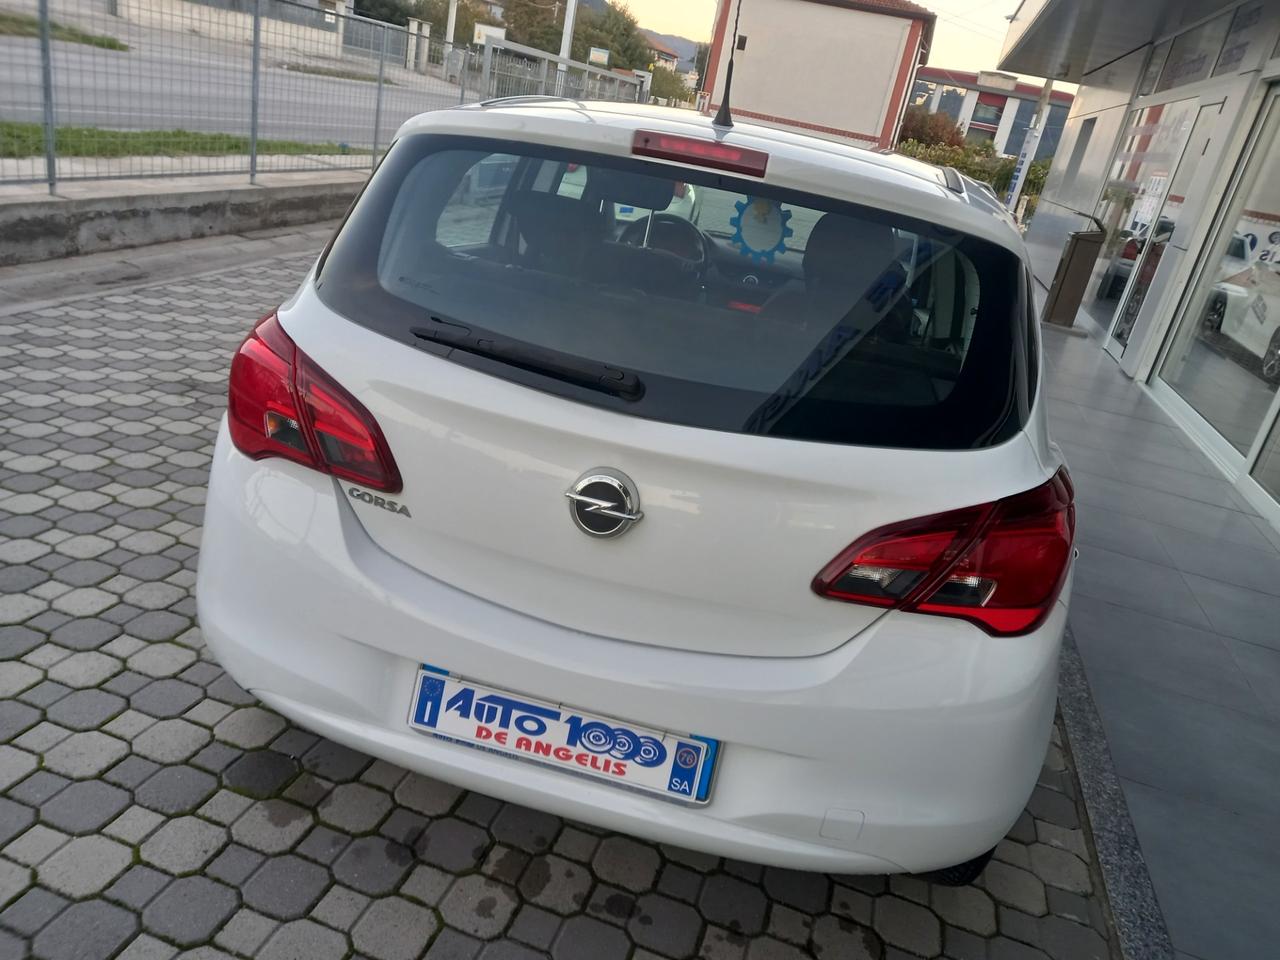 Opel Corsa 1.2 5 PORTE * UNICO PROPRIETARIO * CRUISE CONTROL